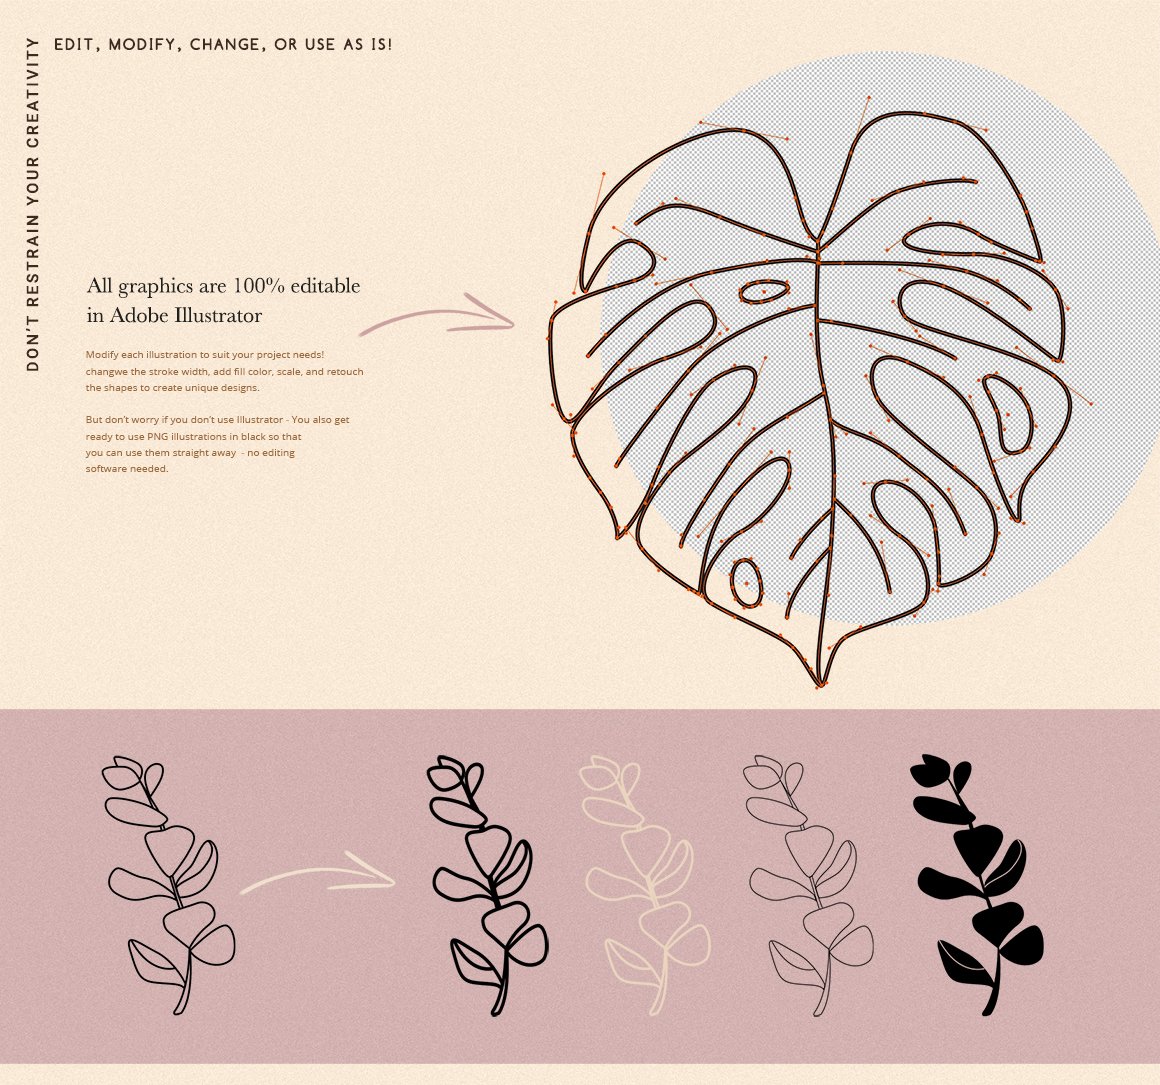 Botanical Elements for Logo Design